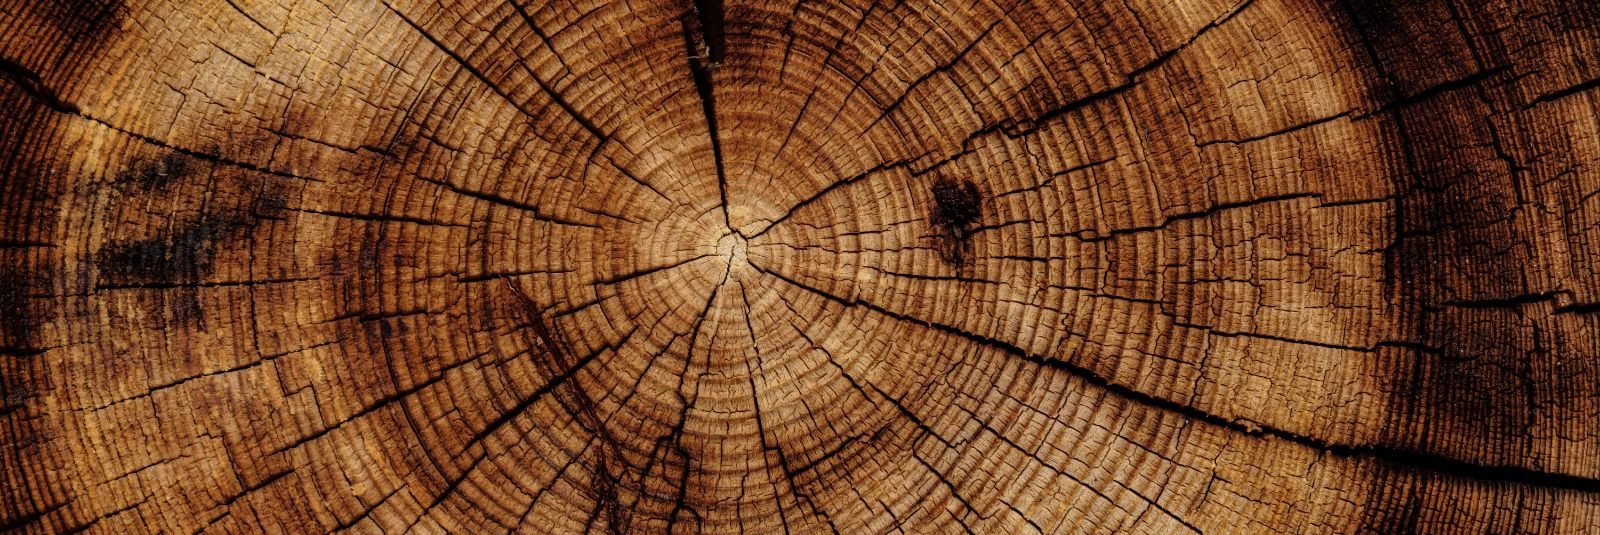 Kui otsite usaldusväärset partnerit puidu ja puidu esmatöötlustoodete hulgimüügis, siis olete jõudnud õigesse kohta. TIMBLE OÜ on ettevõte, mis on spetsialiseer